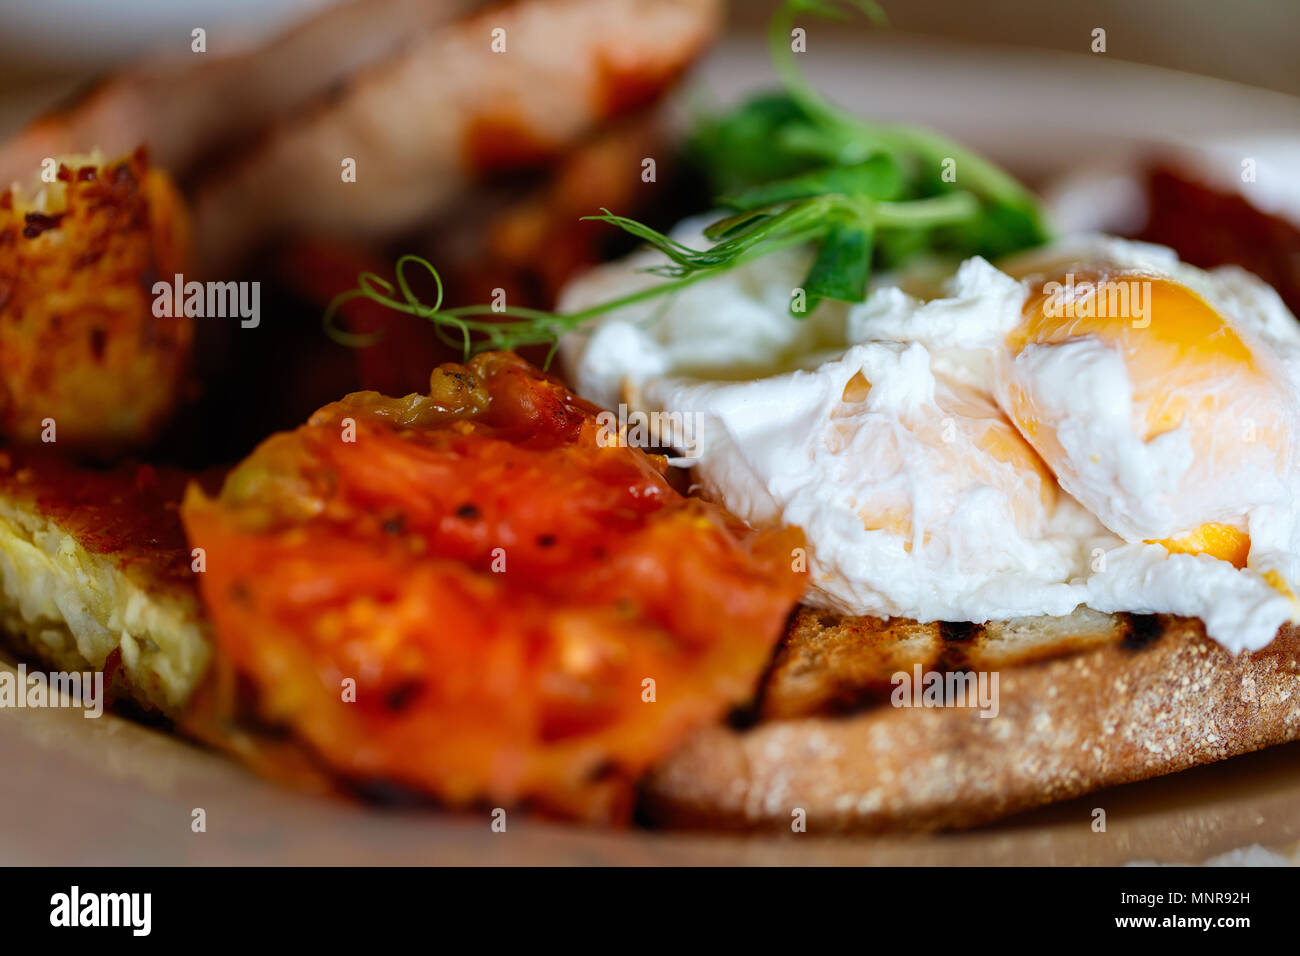 Délicieux petit déjeuner avec des œufs, du bacon et des légumes Banque D'Images